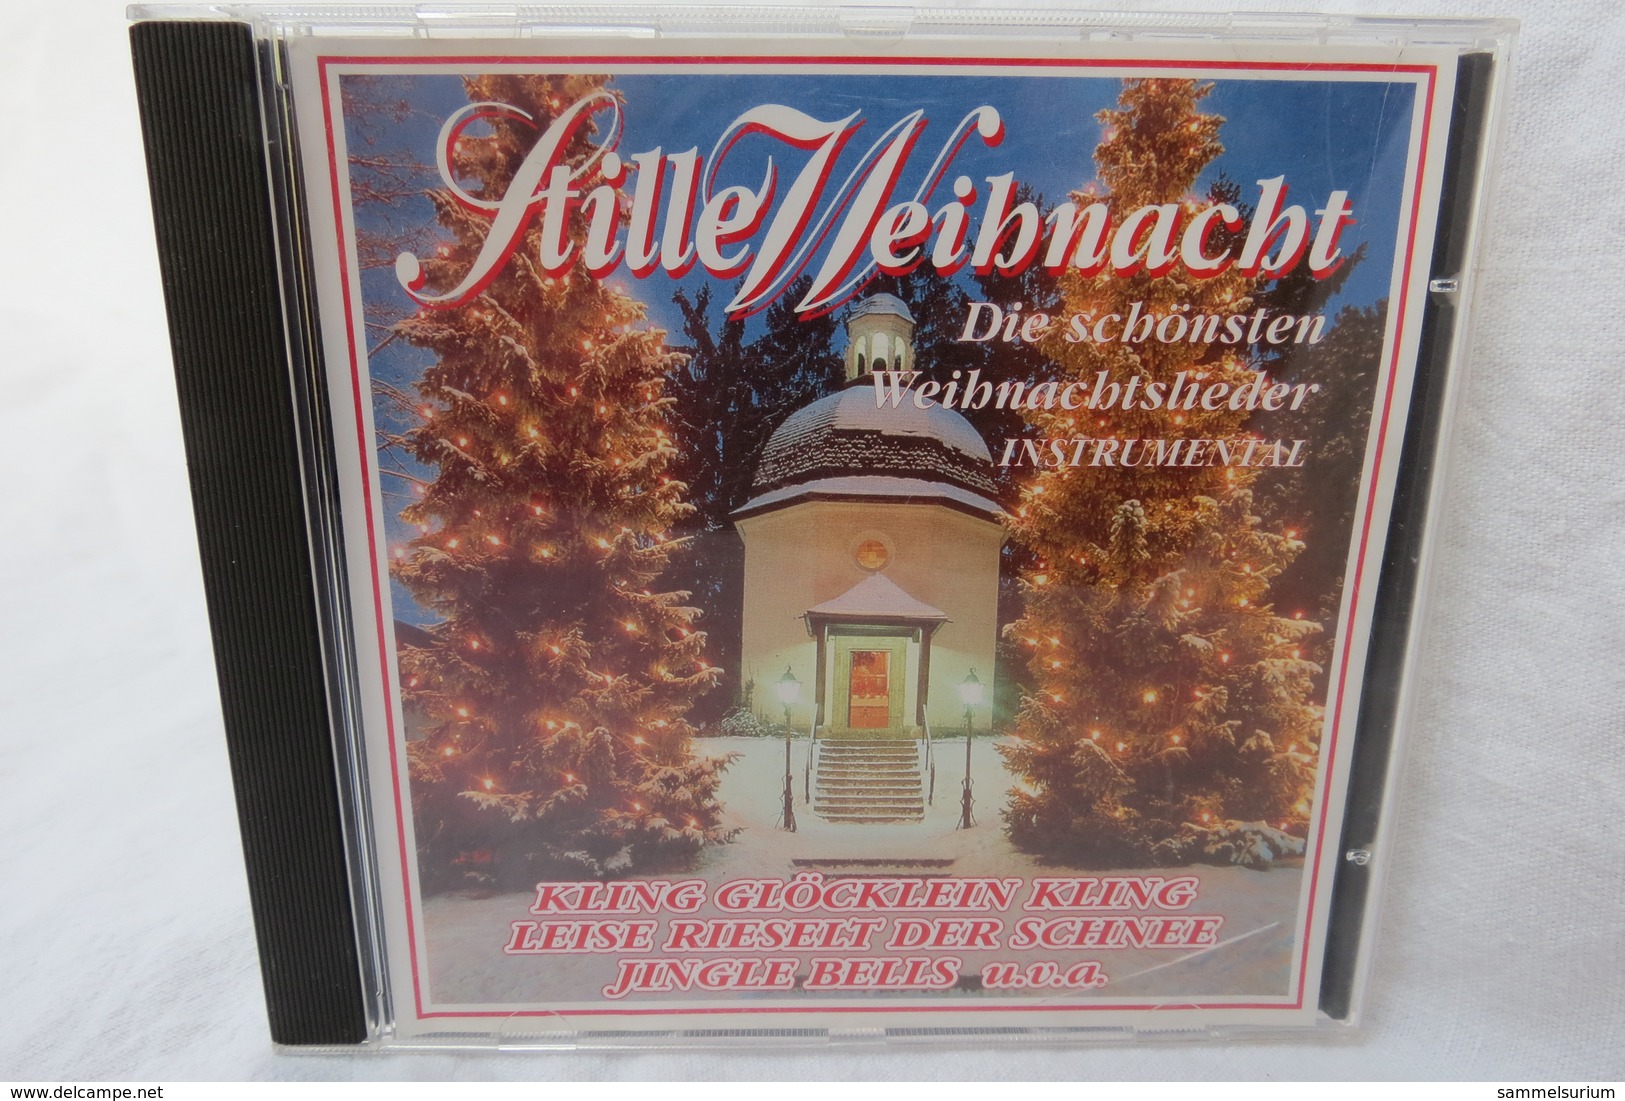 CD "Stille Weihnacht" Die Schönsten Weihnachtslieder, Instrumental - Weihnachtslieder